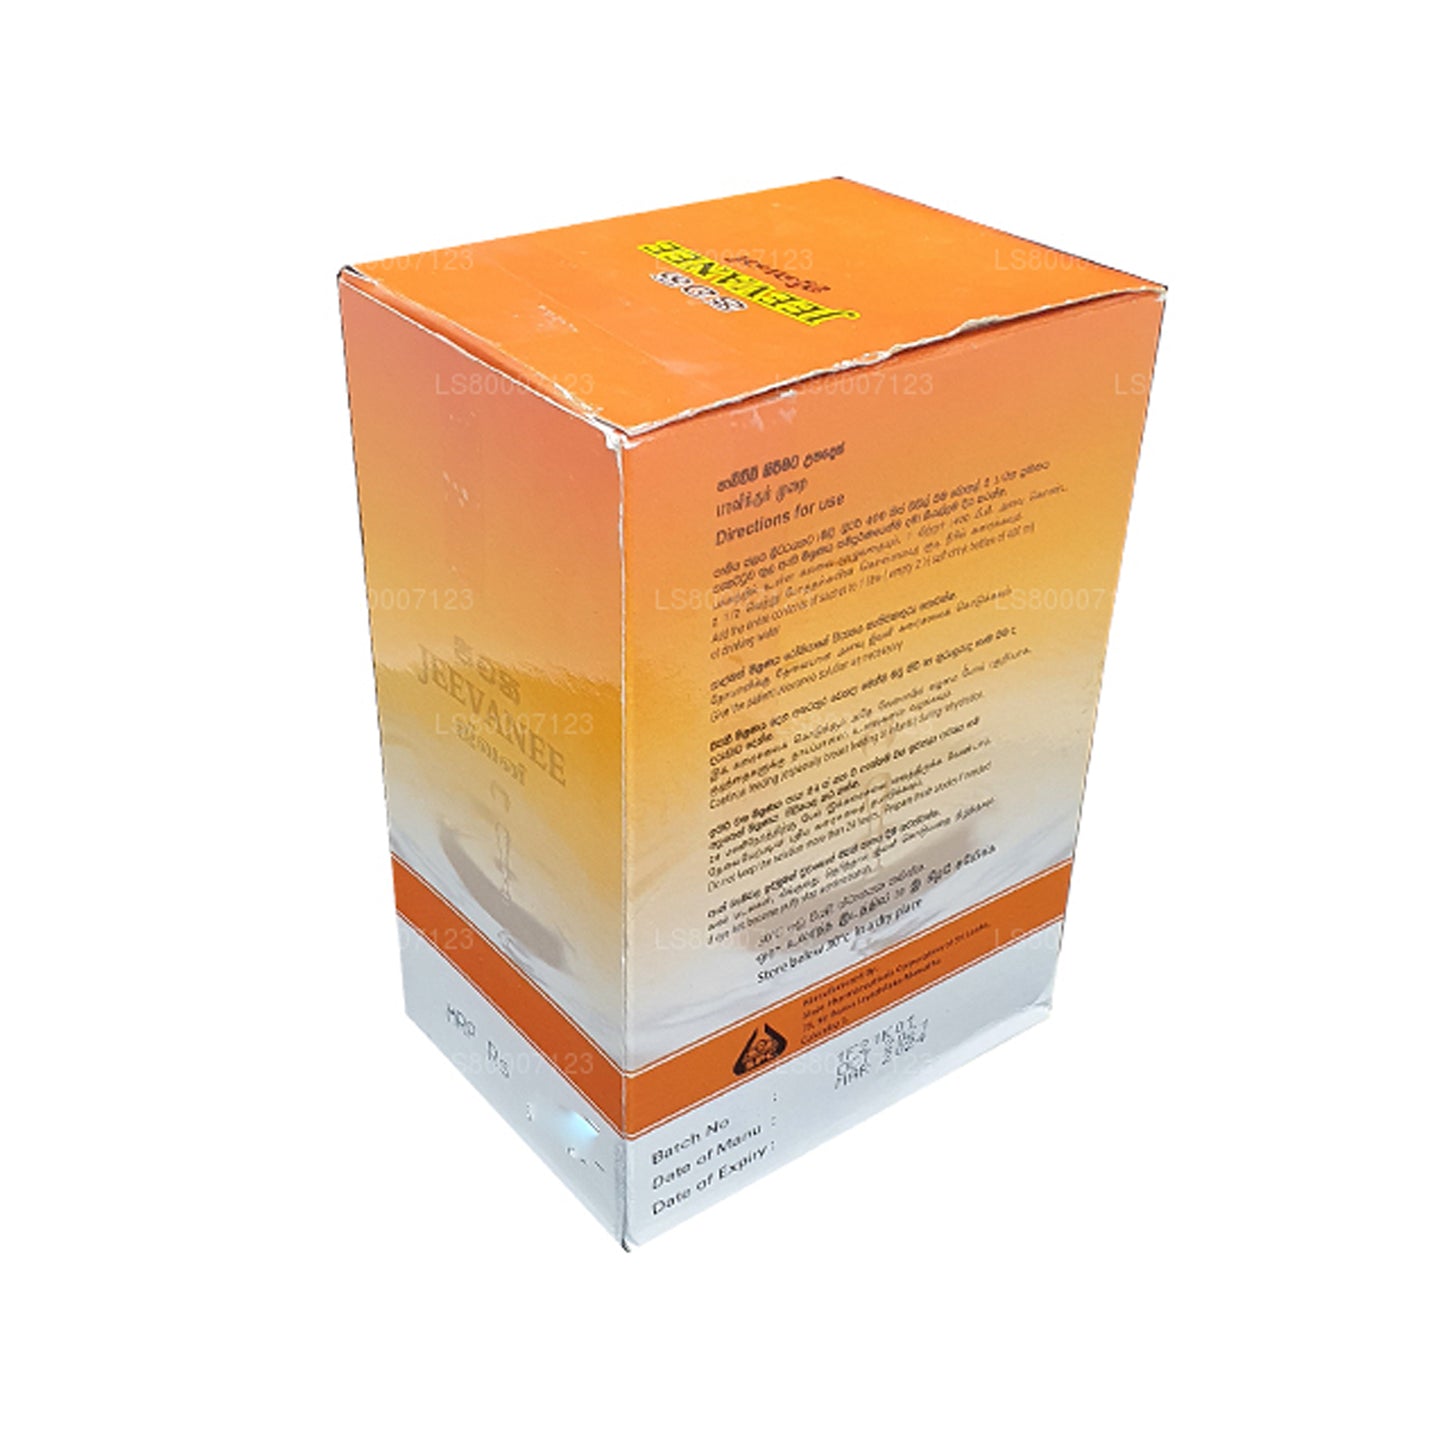 Jeevanee orale rehydratatiezouten met sinaasappelsmaak (25 zakjes)